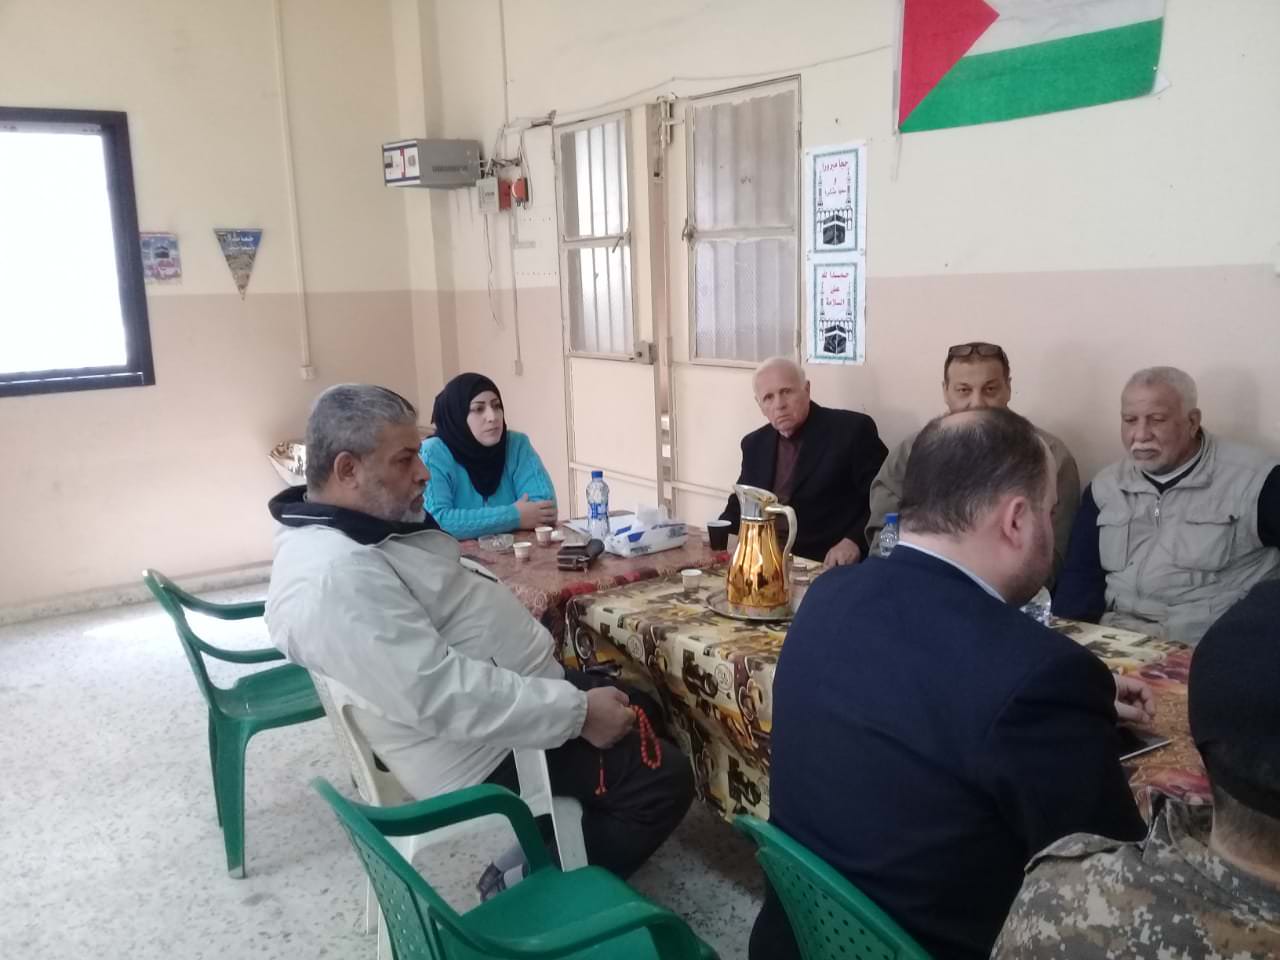 لجنة الانقاذ الدولية تزور مخيم البداوي وتلتقي ممثلي اللجنة الشعبية